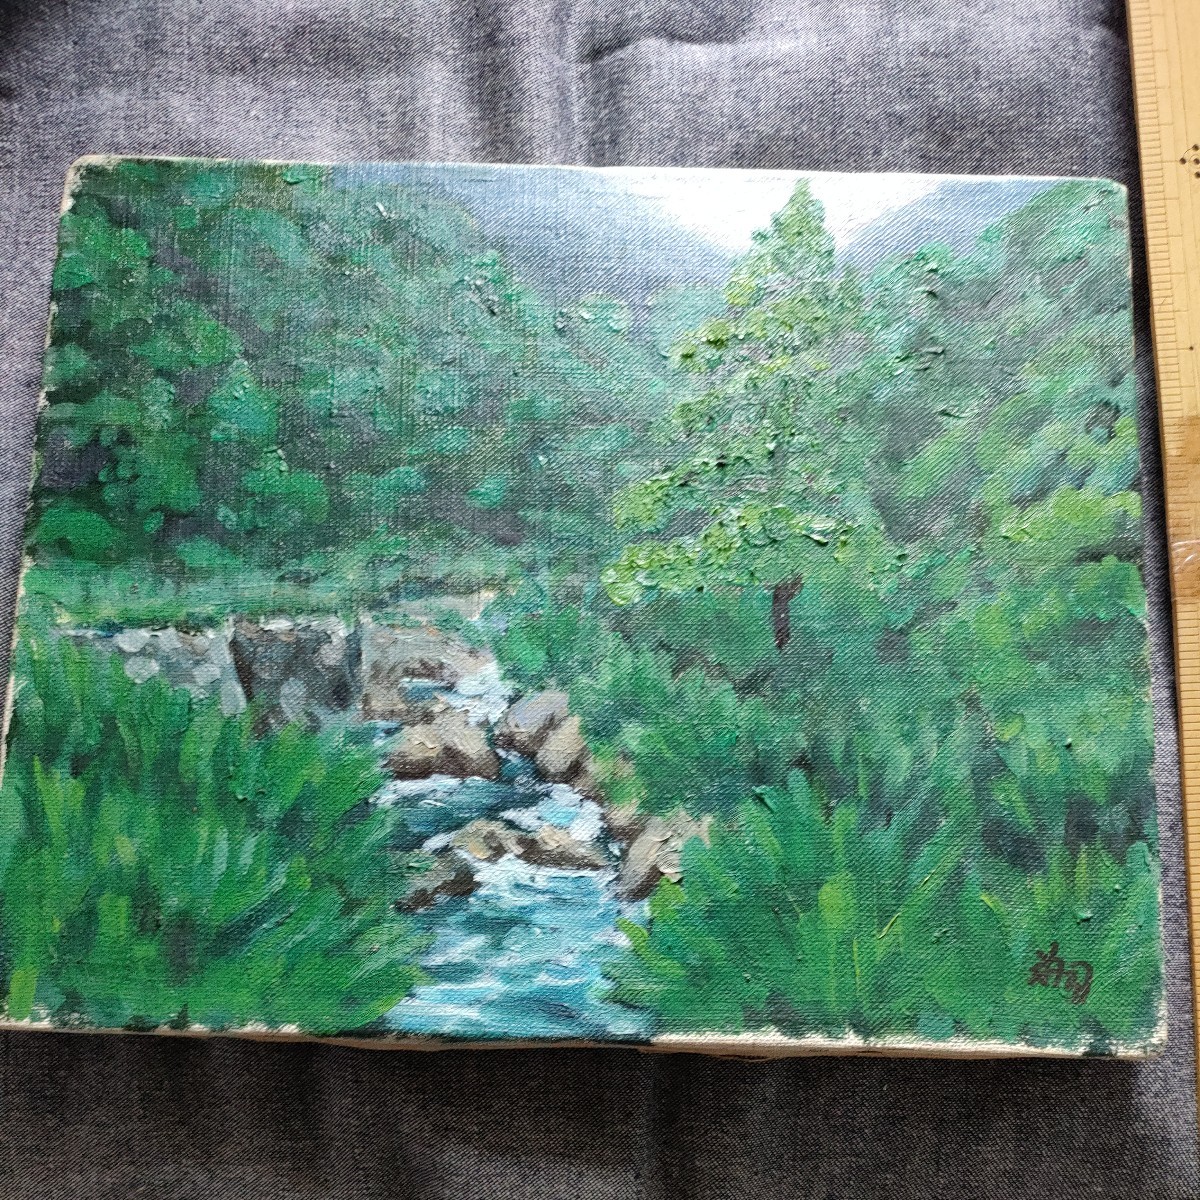 अज्ञात कलाकार द्वारा परिदृश्य चित्रकला, पहाड़ नदी परिदृश्य, 22 x 27, जंगल, नदी, पर्वत, तैल चित्र, पुराना, चित्रकारी, तैल चित्र, प्रकृति, परिदृश्य चित्रकला